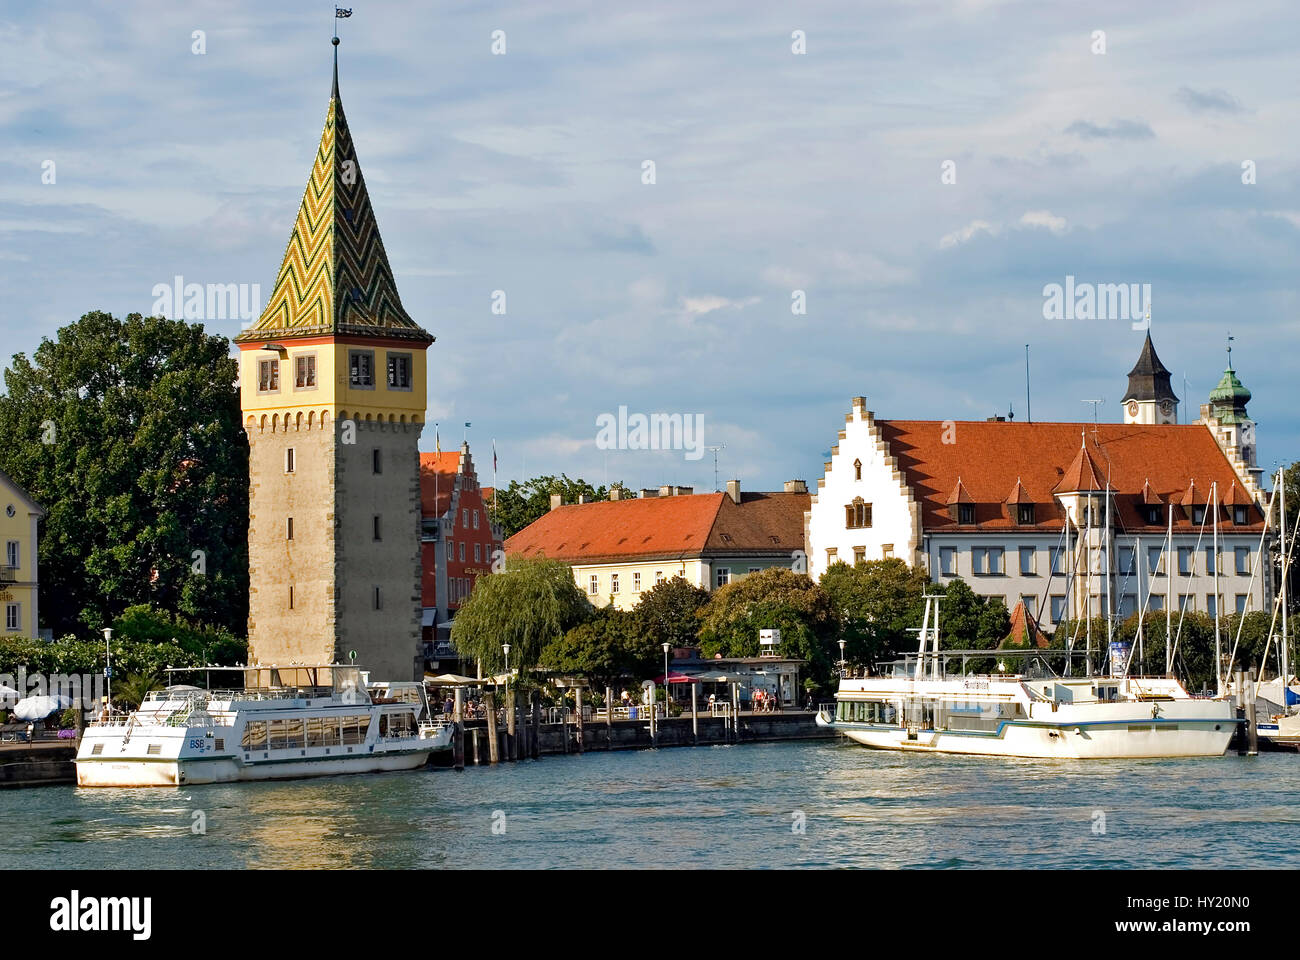 Questo stock foto mostra il famoso centro storico della città bavarese di Lindau, in Germania, con il porto in primo piano. Nella parte anteriore del Foto Stock